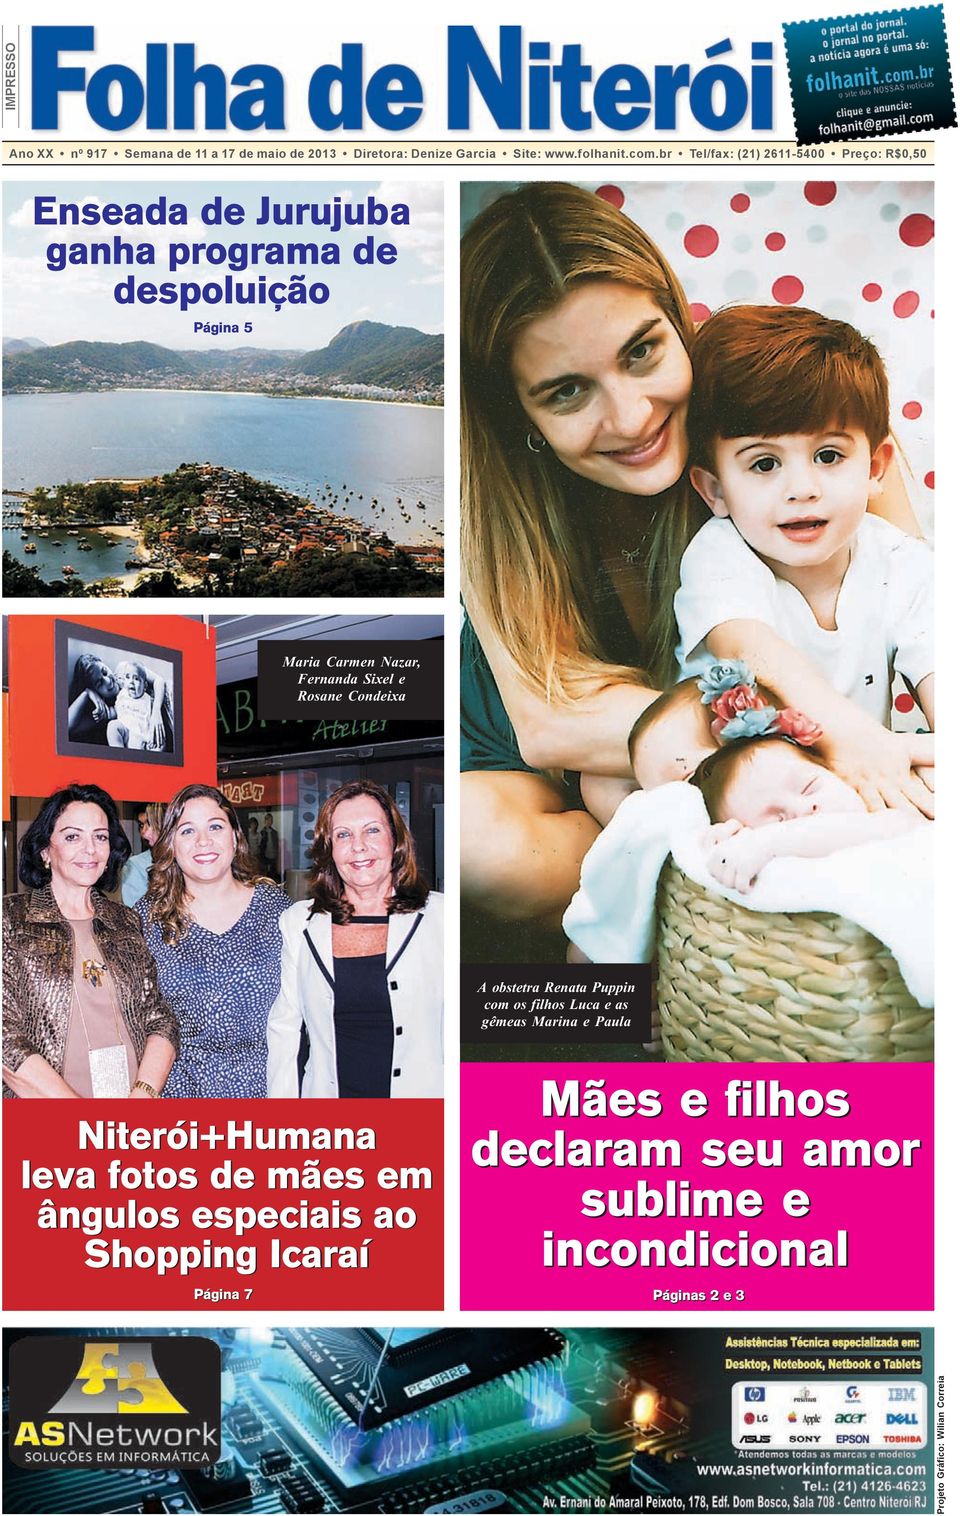 Fernanda Sixel e Rosane Condeixa A obstetra Renata Puppin com os filhos Luca e as gêmeas Marina e Paula Niterói+Humana leva